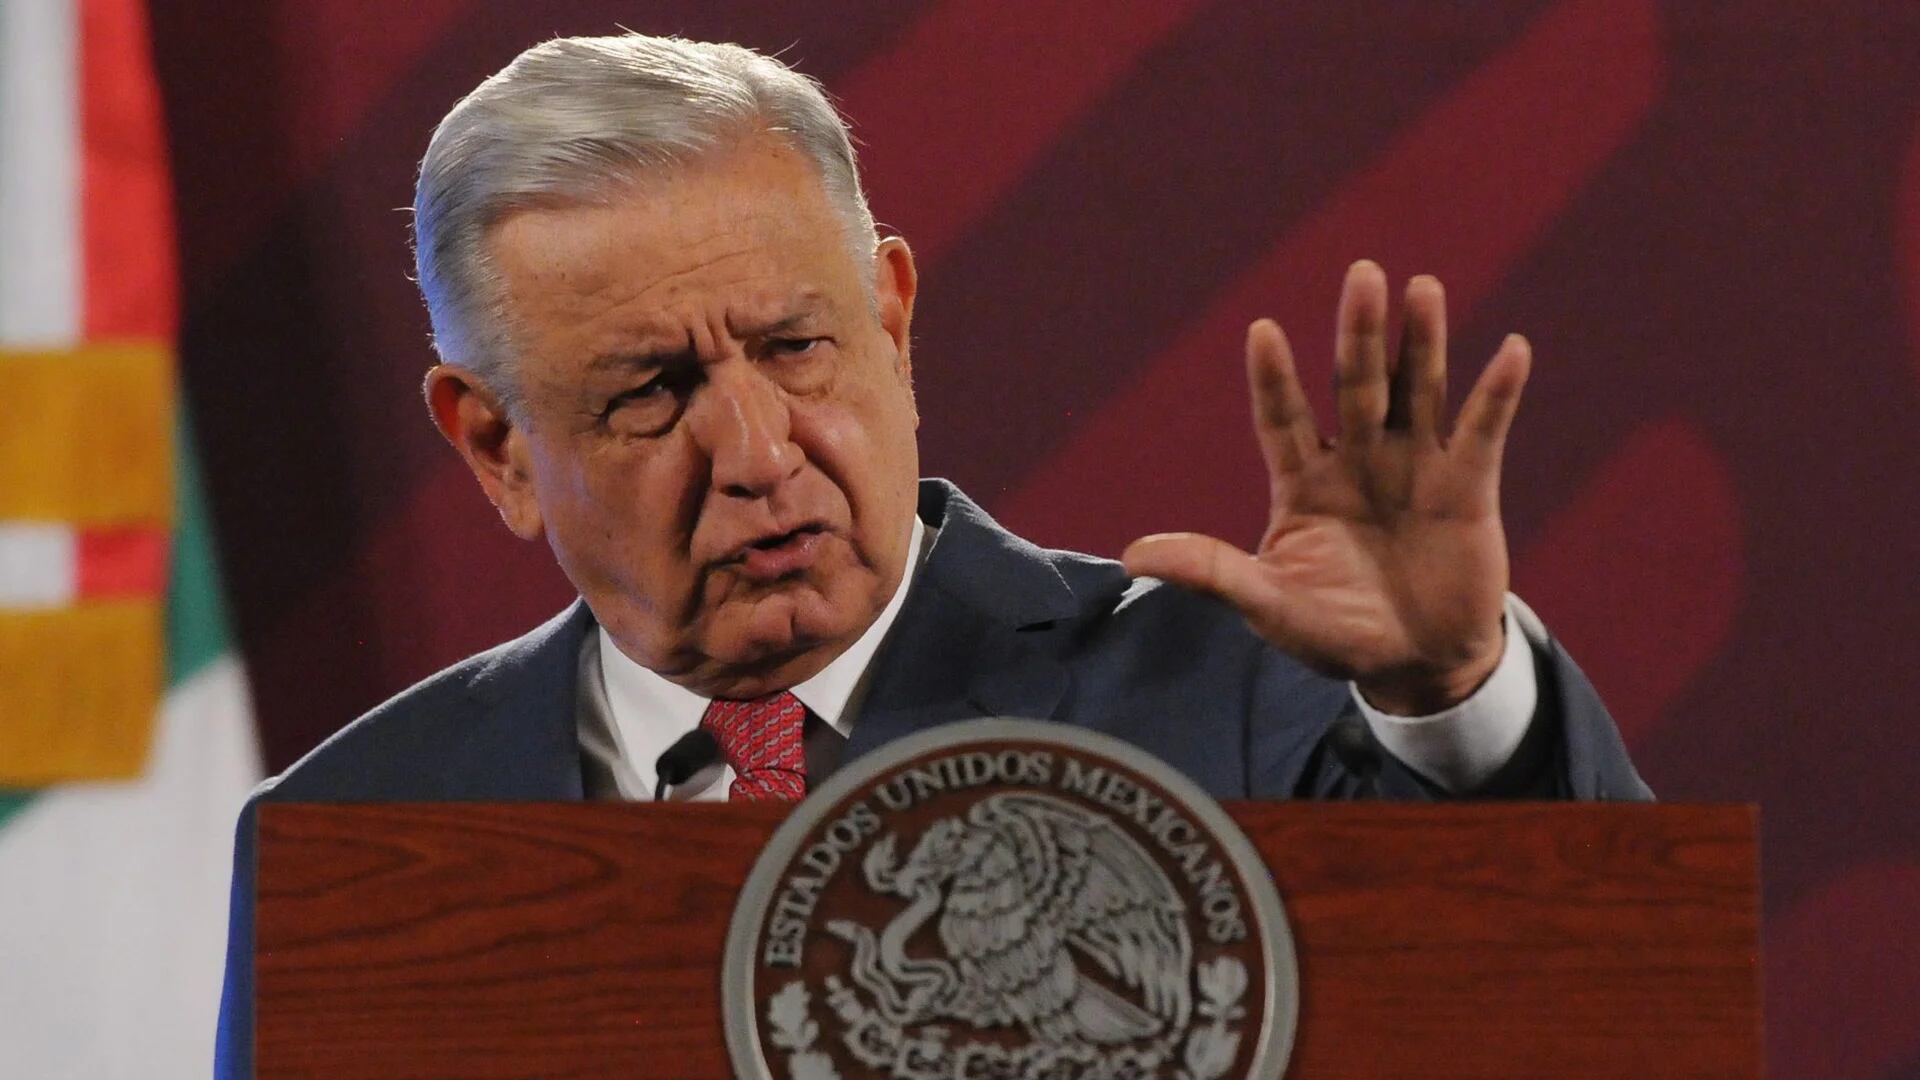 López Obrador dijo que no invitará al Poder Judicial al Grito de Independencia
Foto:
Cuartoscuro